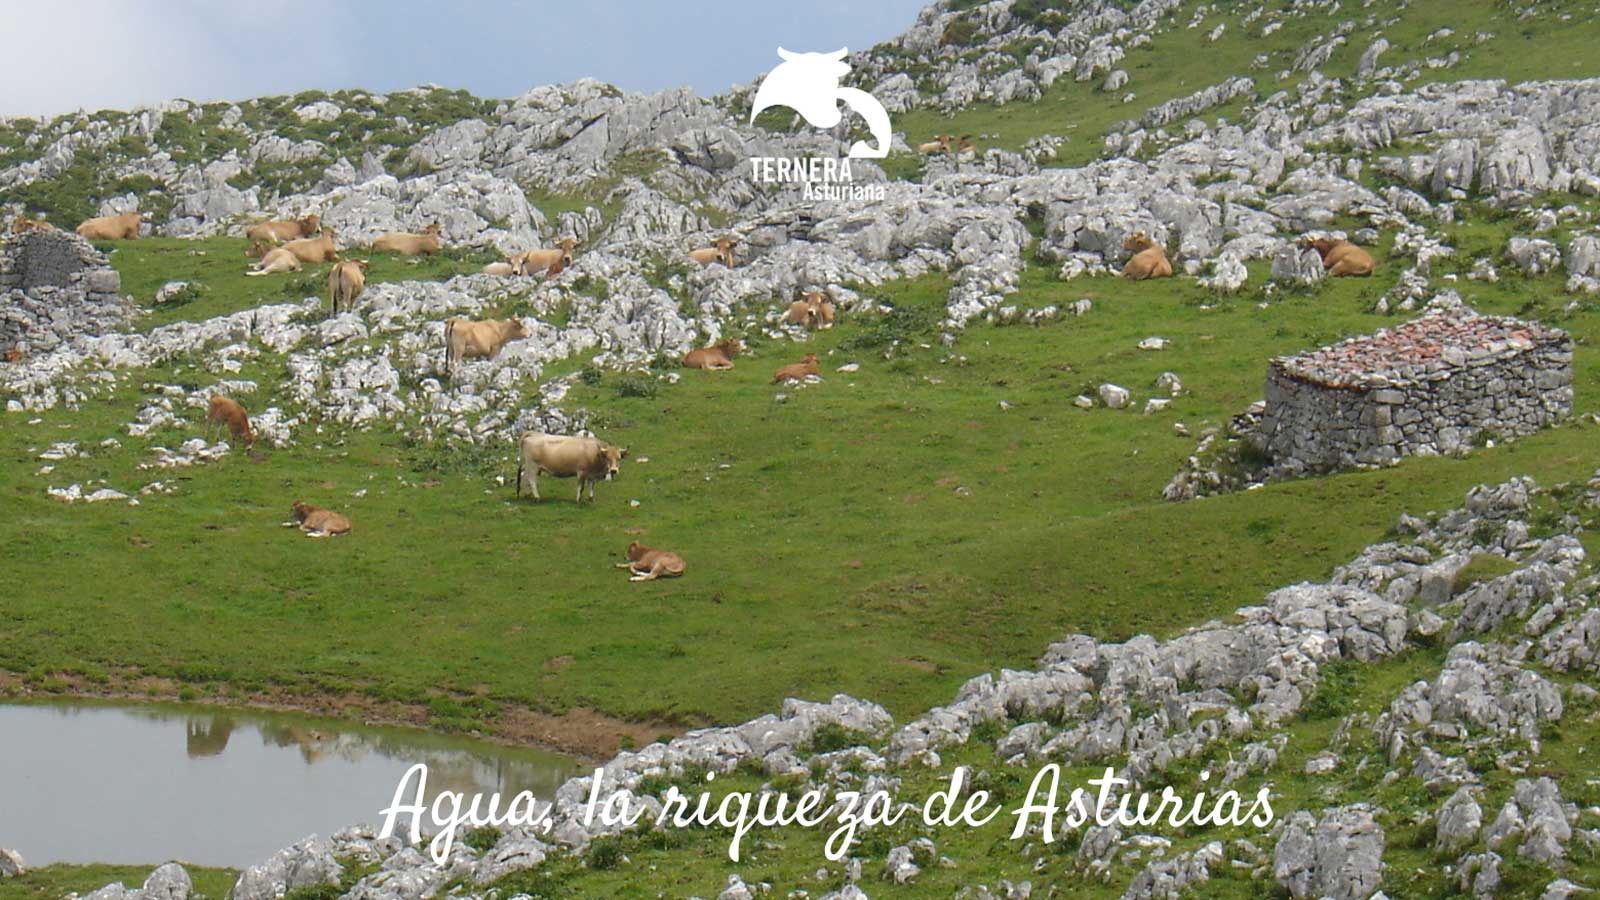 El agua de Asturias es una de las señas de identidad del principado